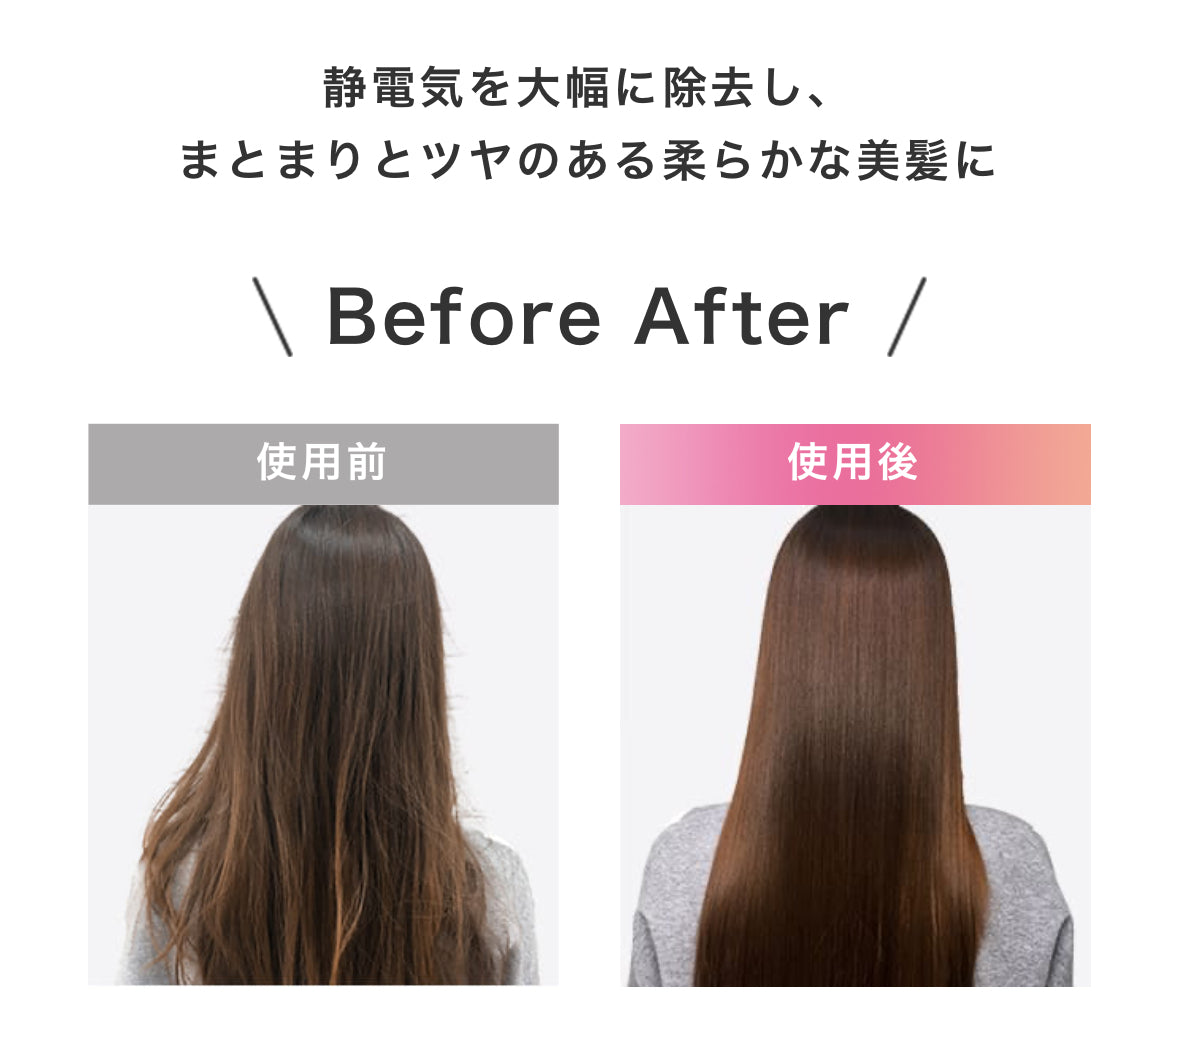 日本SHAPL Hairstyler多功能吹風機